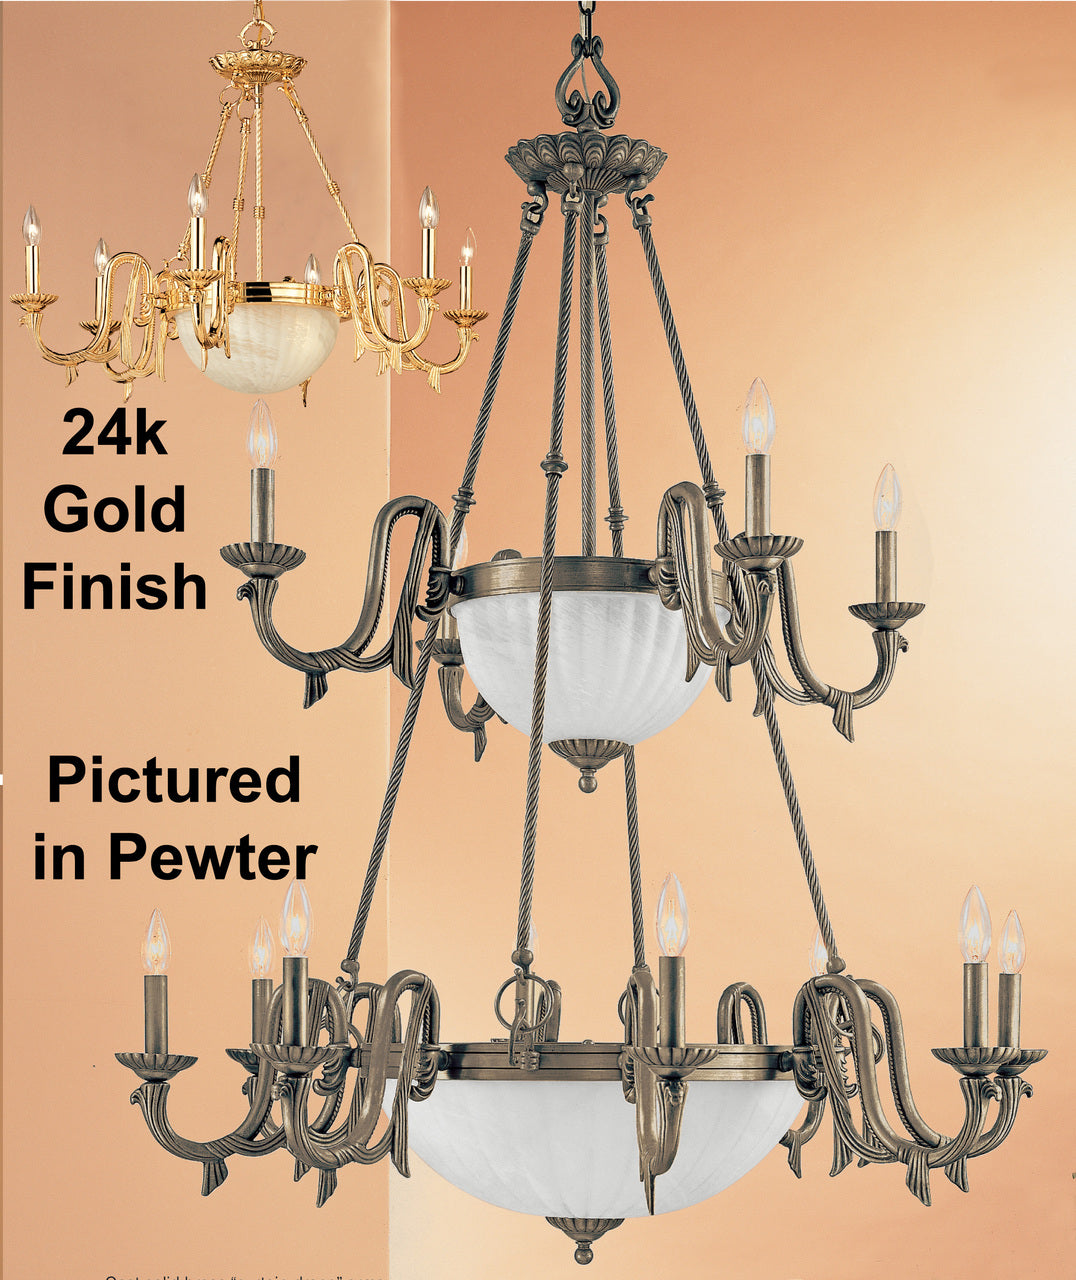 Classic Lighting 68009 G St. Moritz Cast Glass Chandelier in Gold